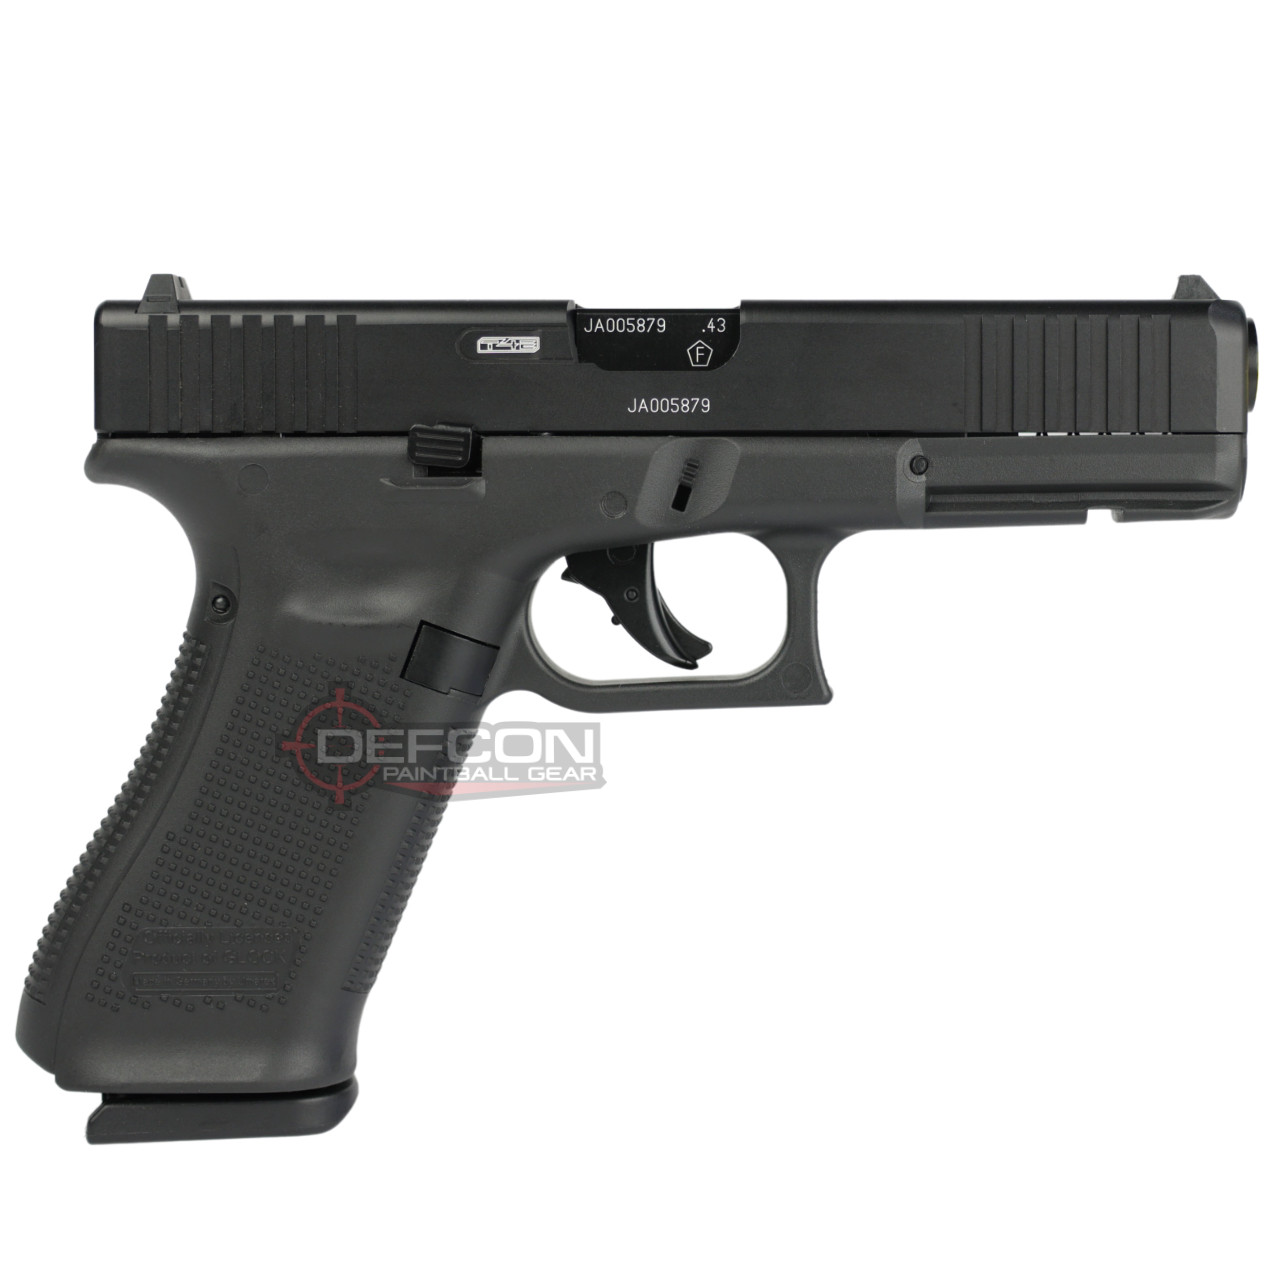 Glock 17 Gen5 Pistol For Training and Defense (.43 Cal) – Defense Innovation